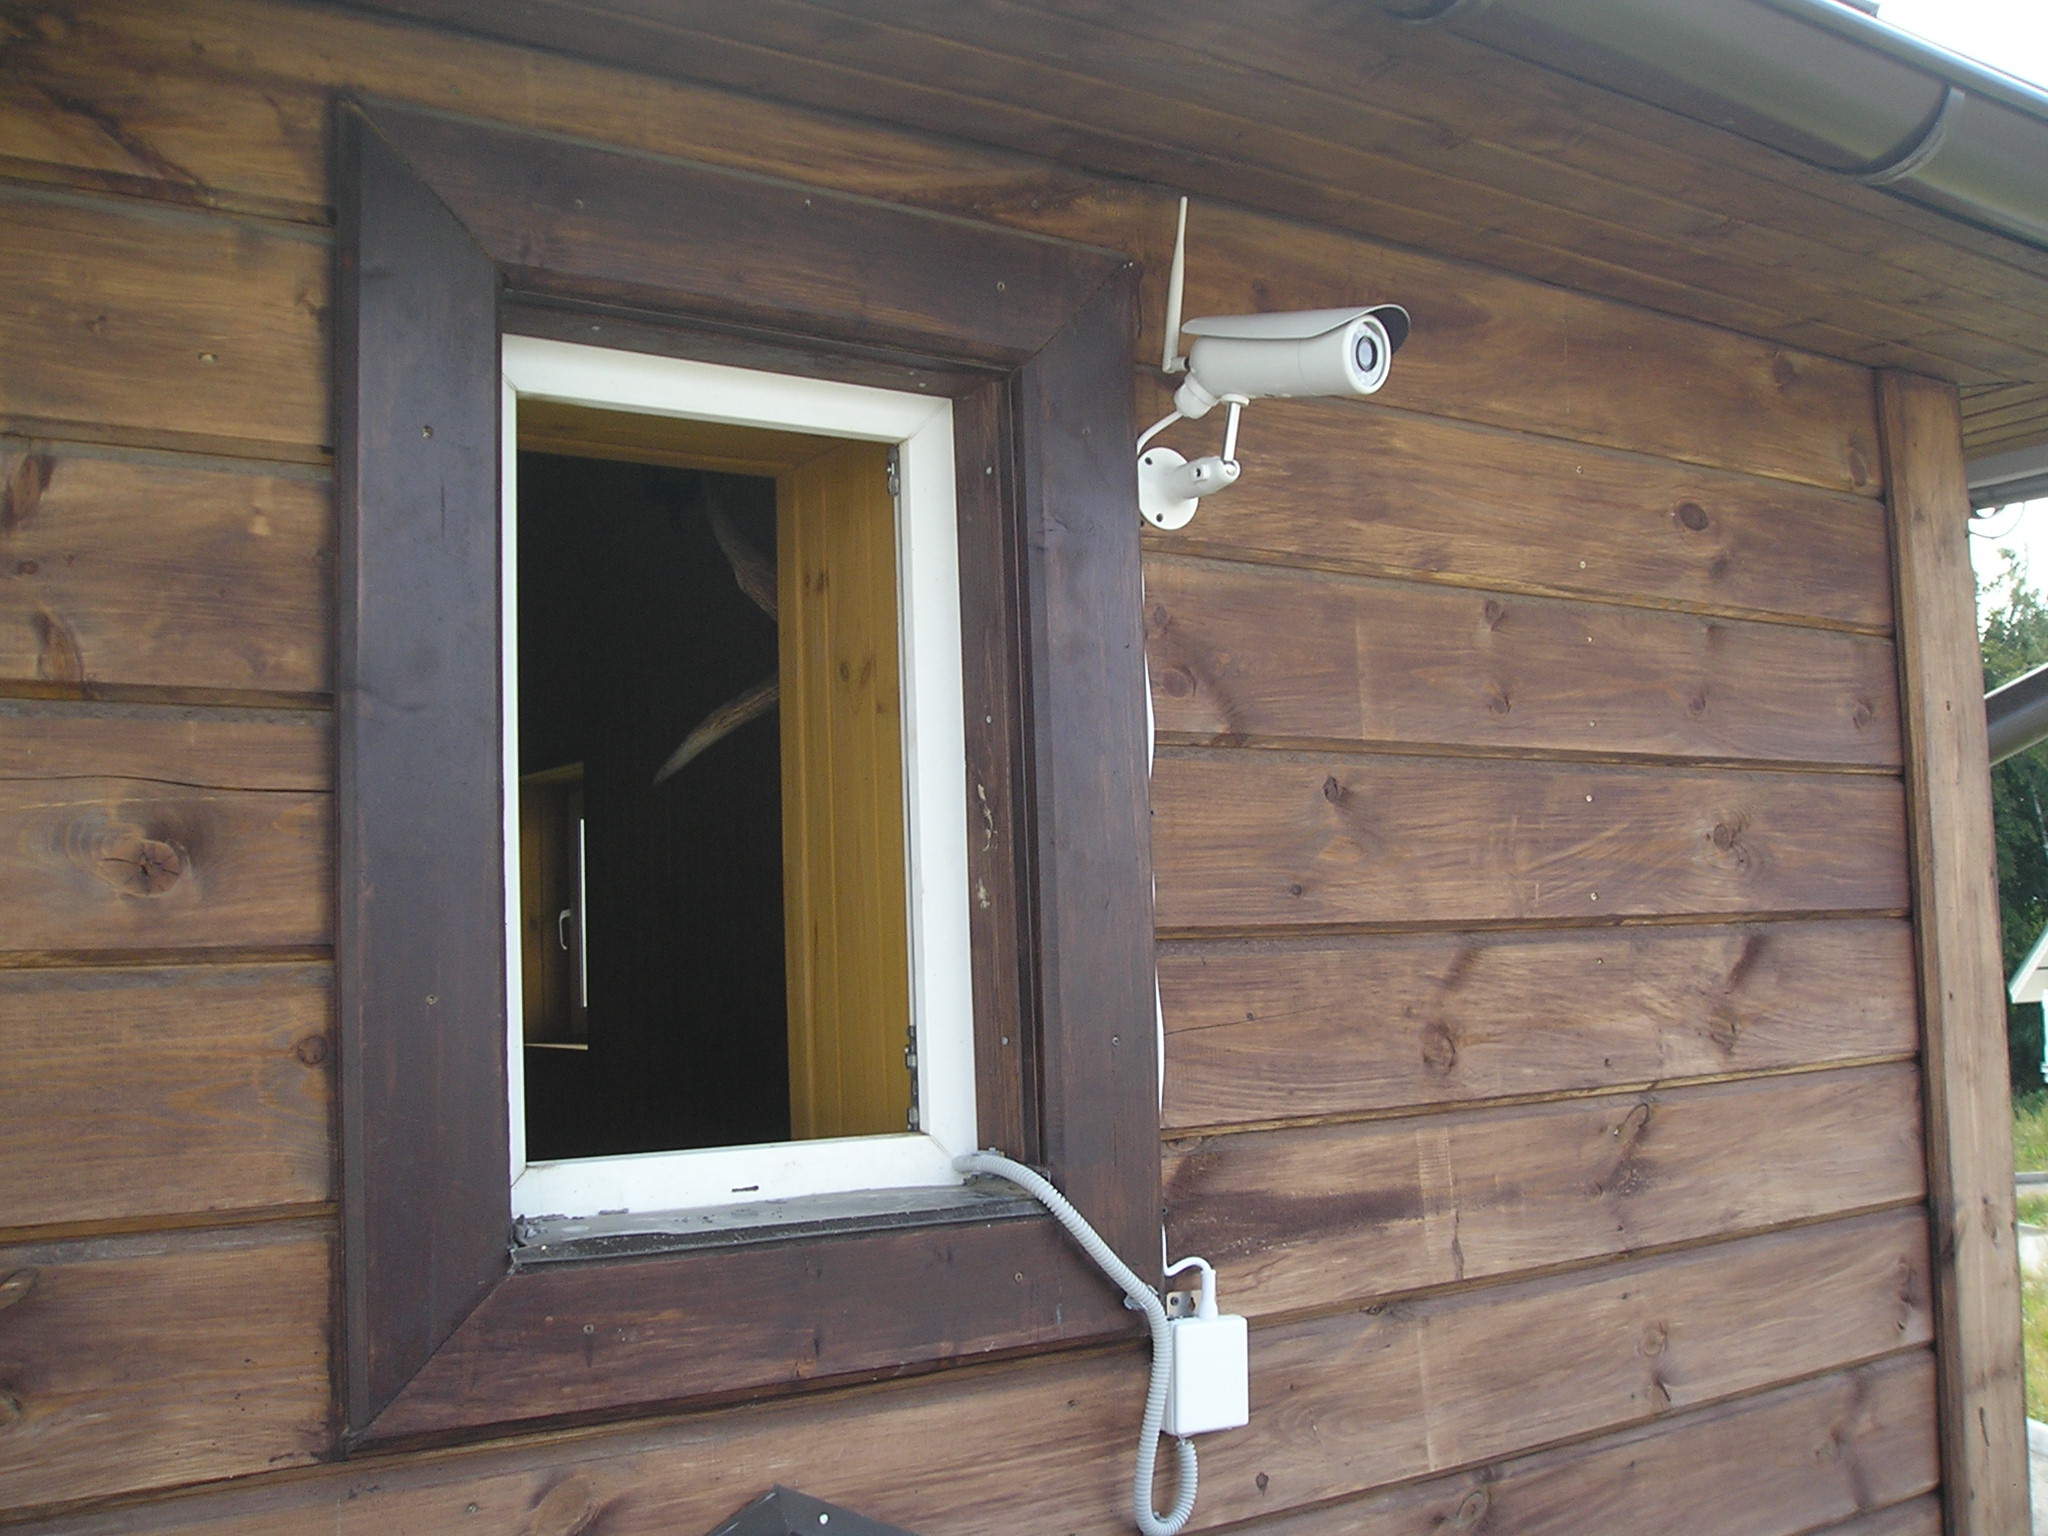 установка 3G камеры на стене гостинного домика